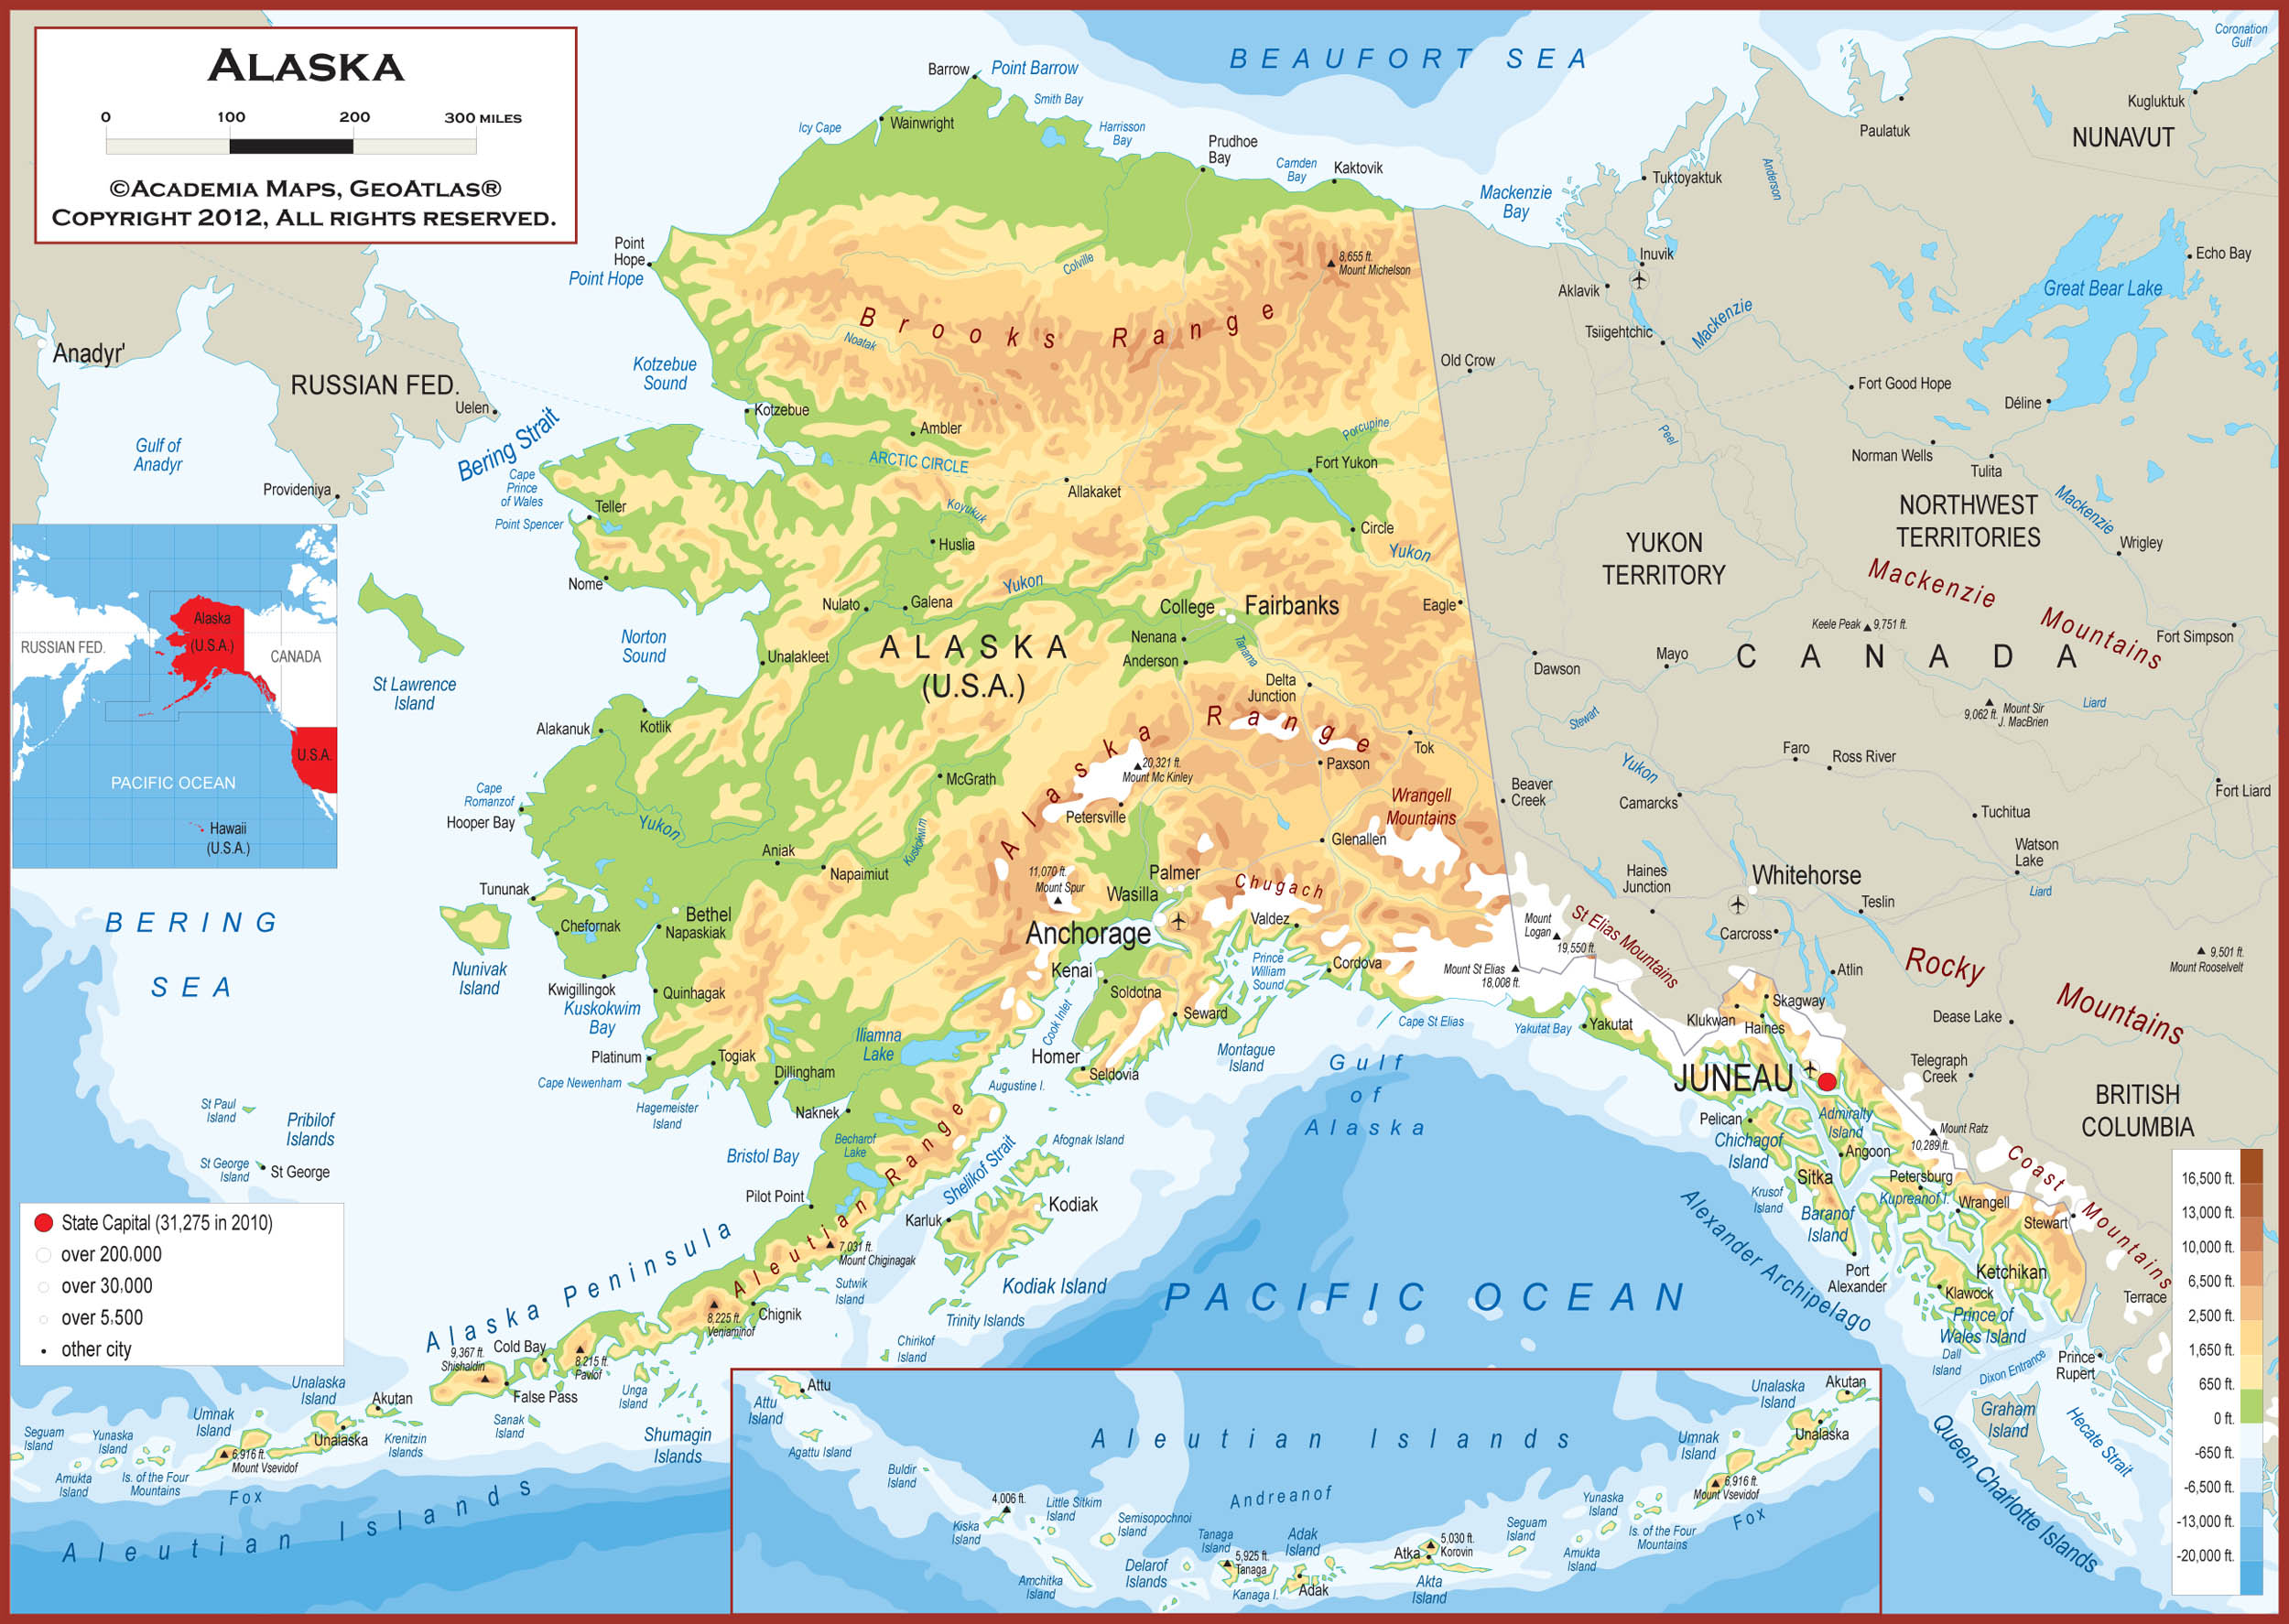 Alaska Map | Fotolip.com Rich image and wallpaper